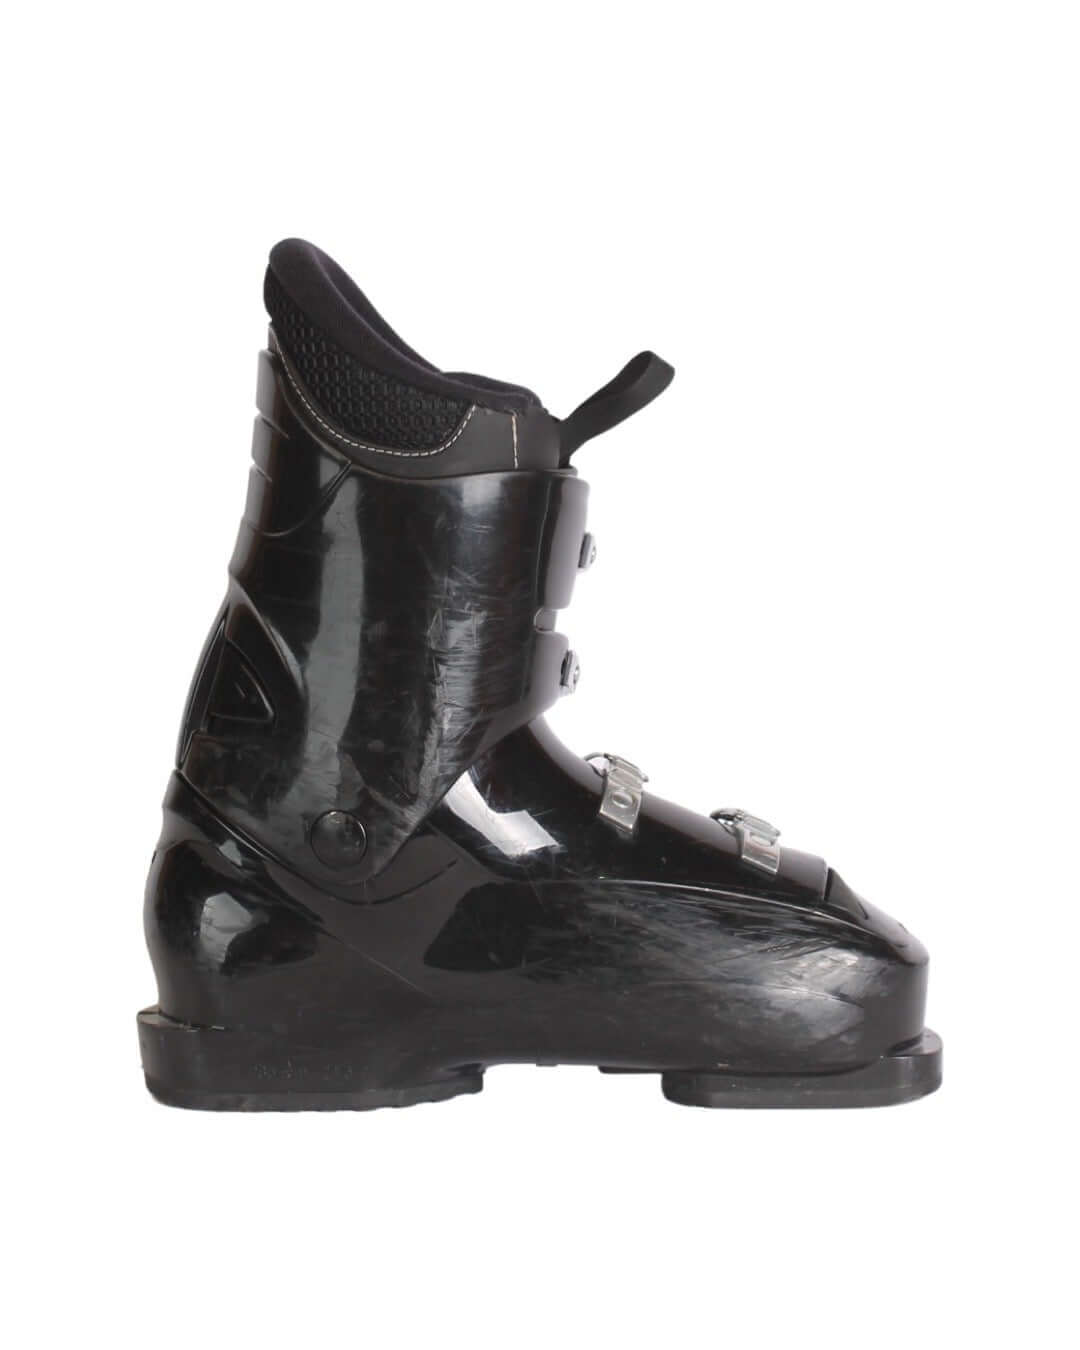 Støvler - Rossignol Comp JR4 - fra 399 kr